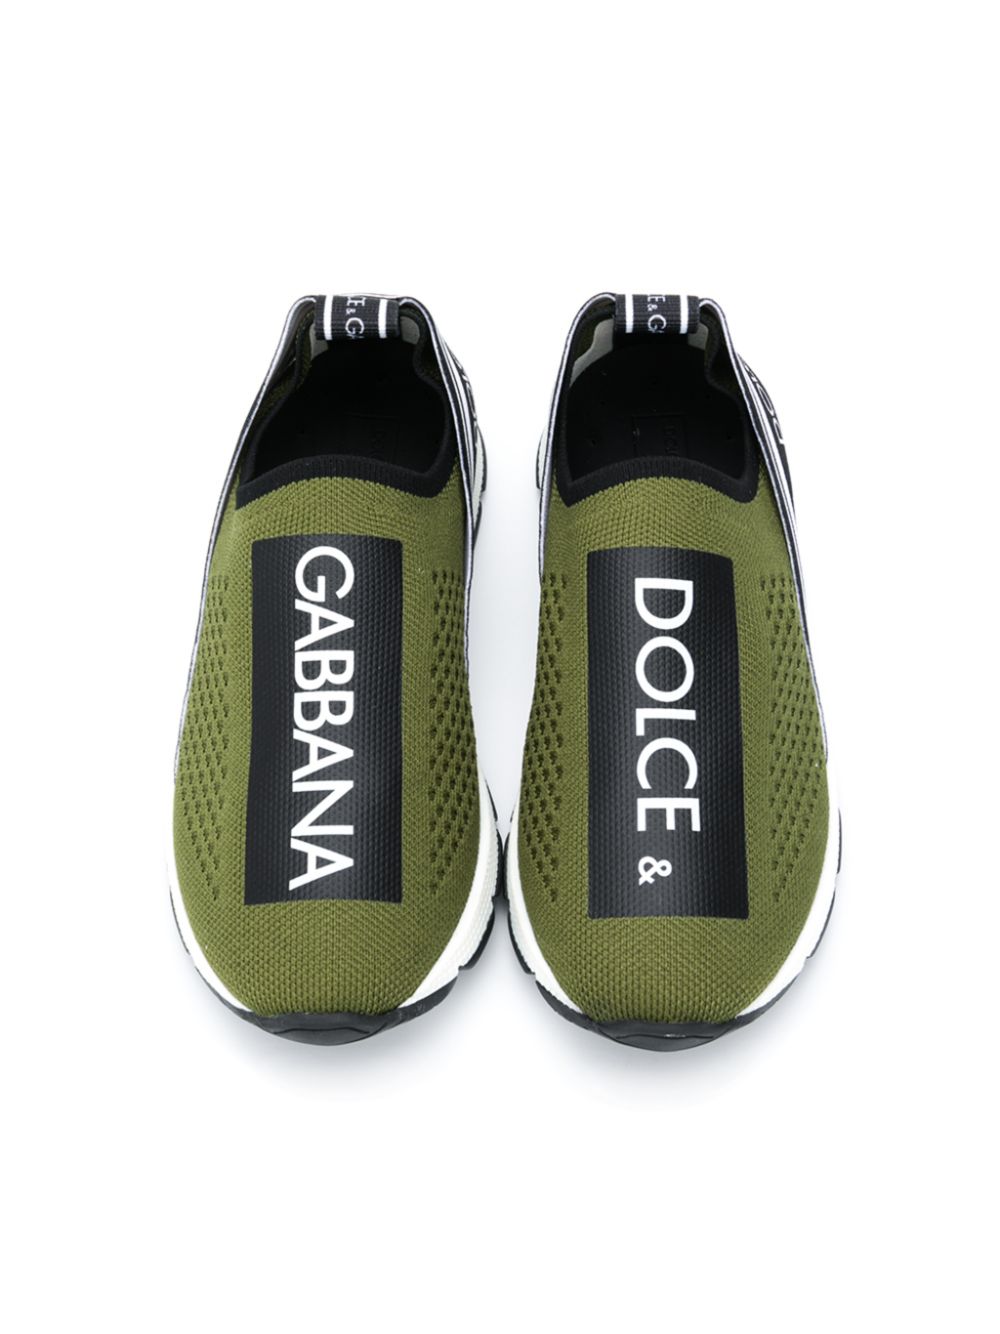 фото Dolce & gabbana kids кроссовки-носки с логотипом